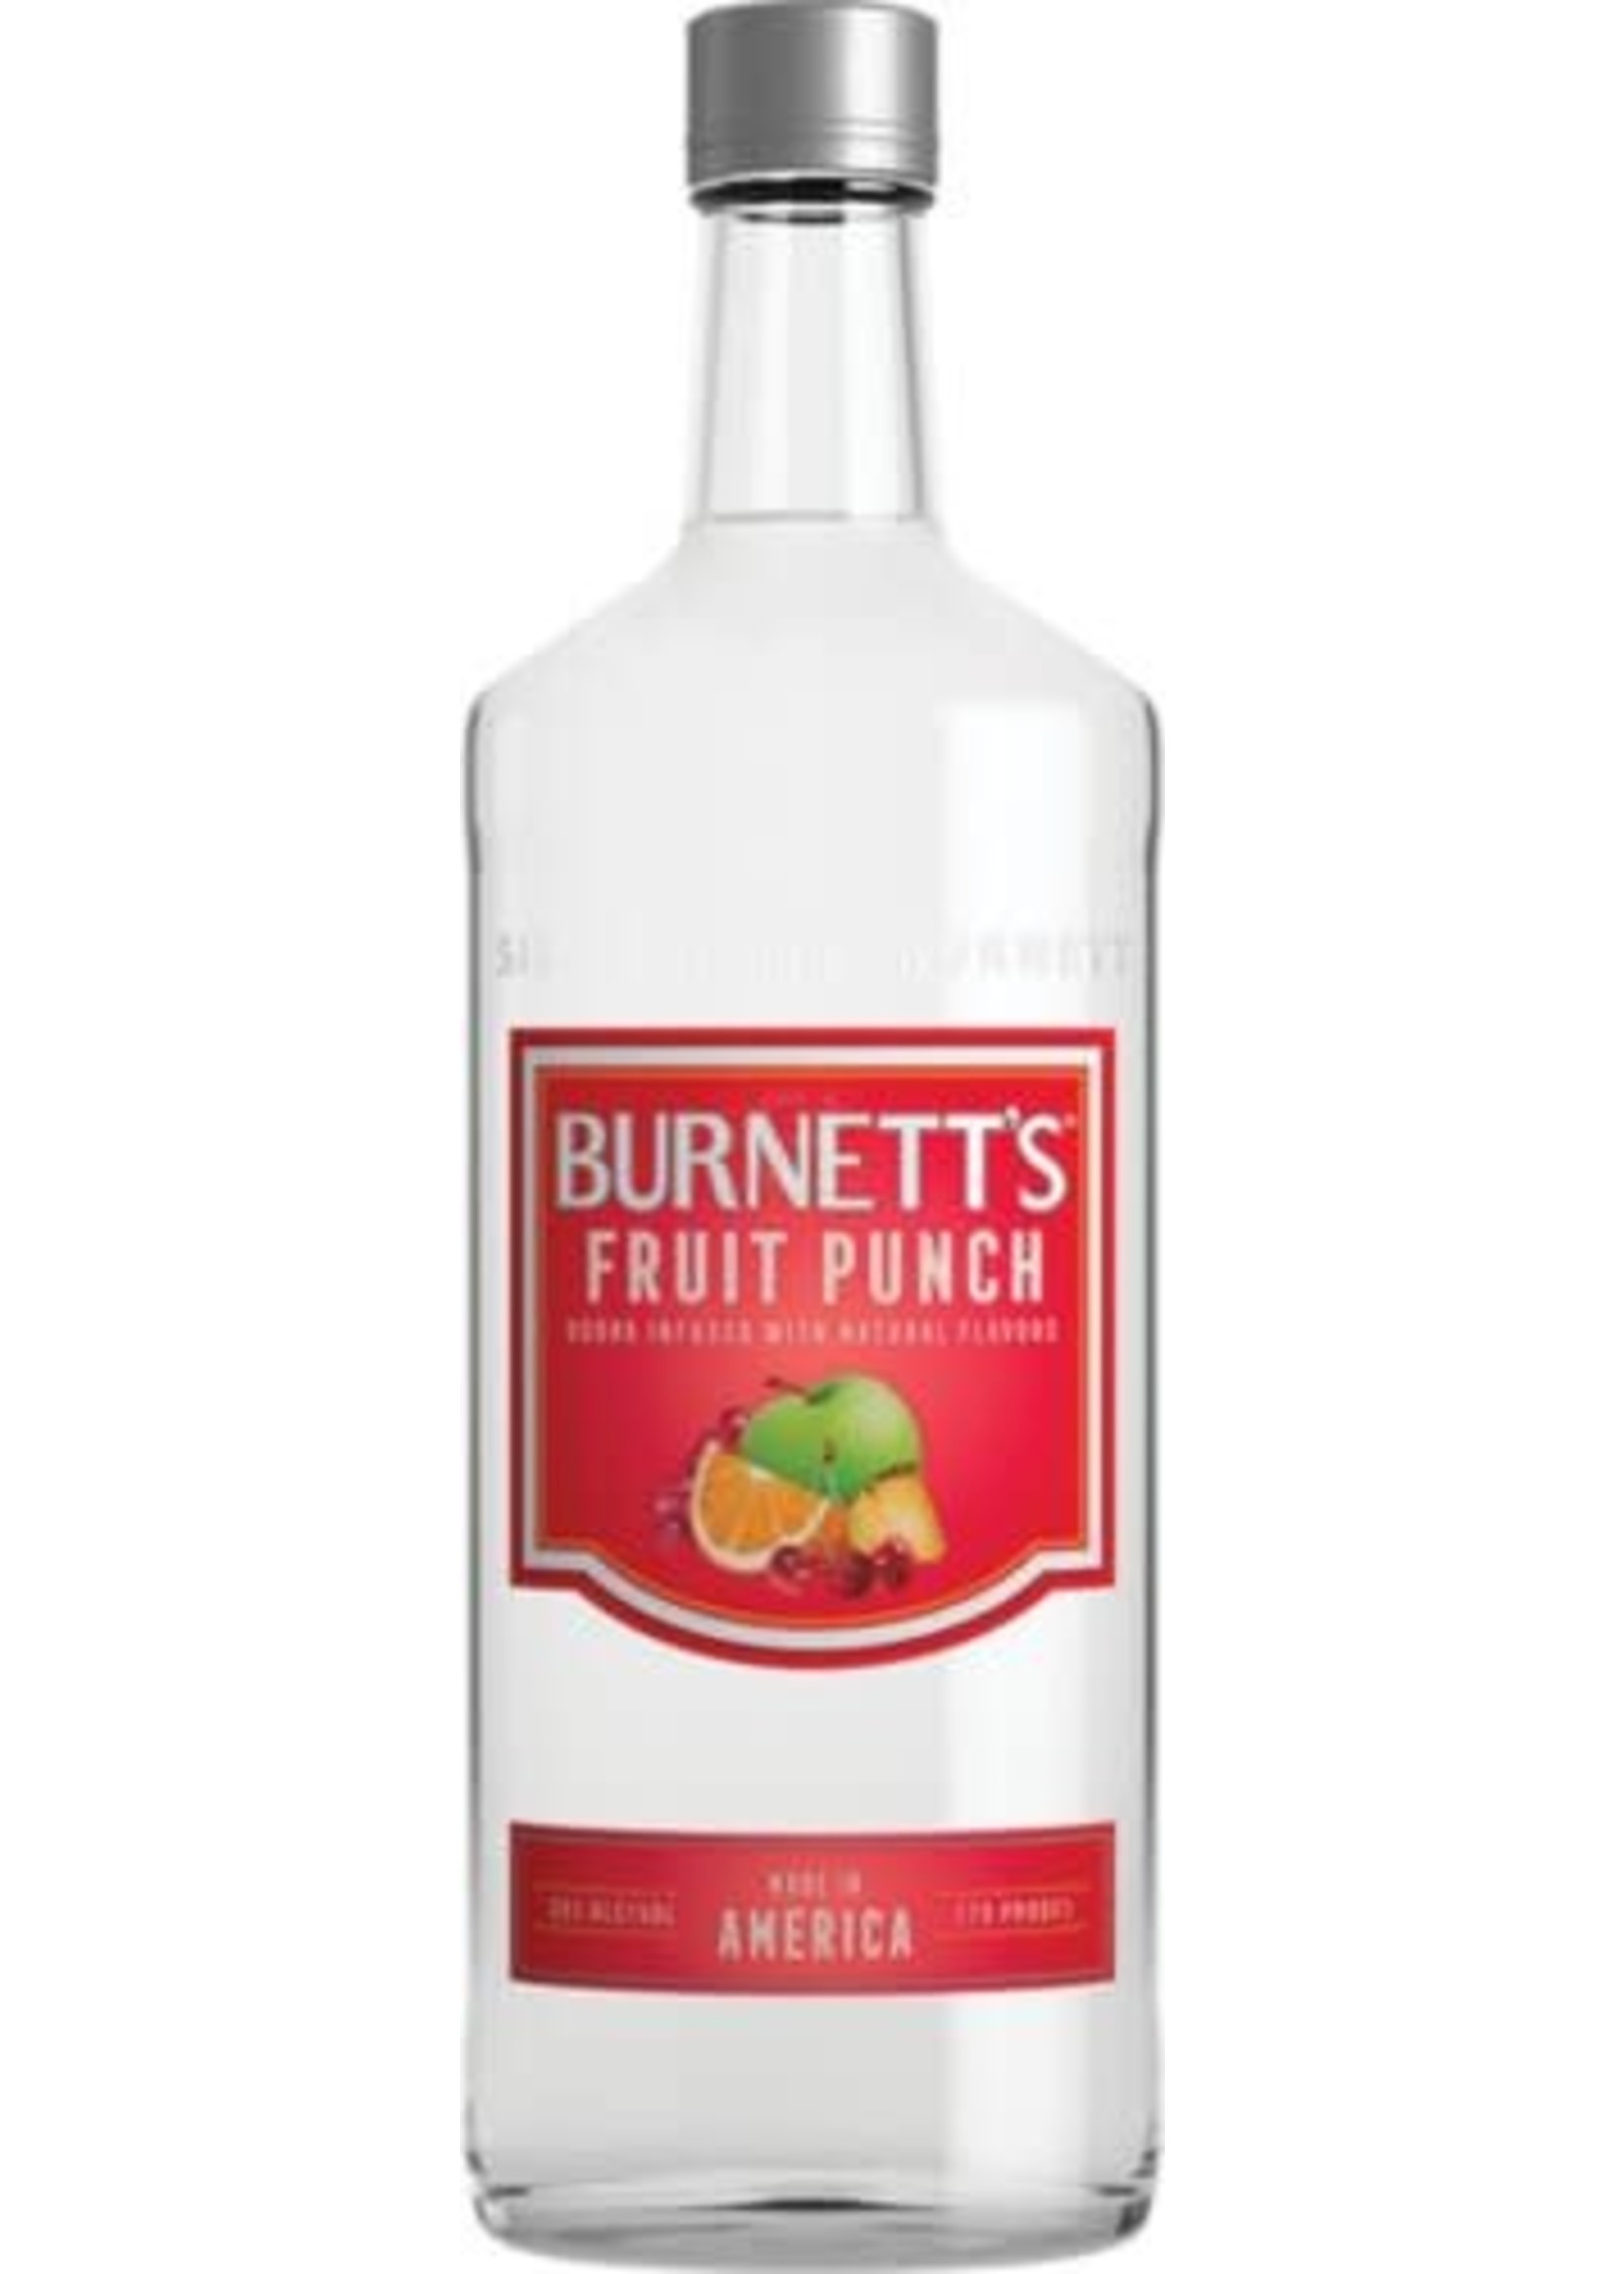 BURNETTS FRUIT PUNCH 1.75 LTR